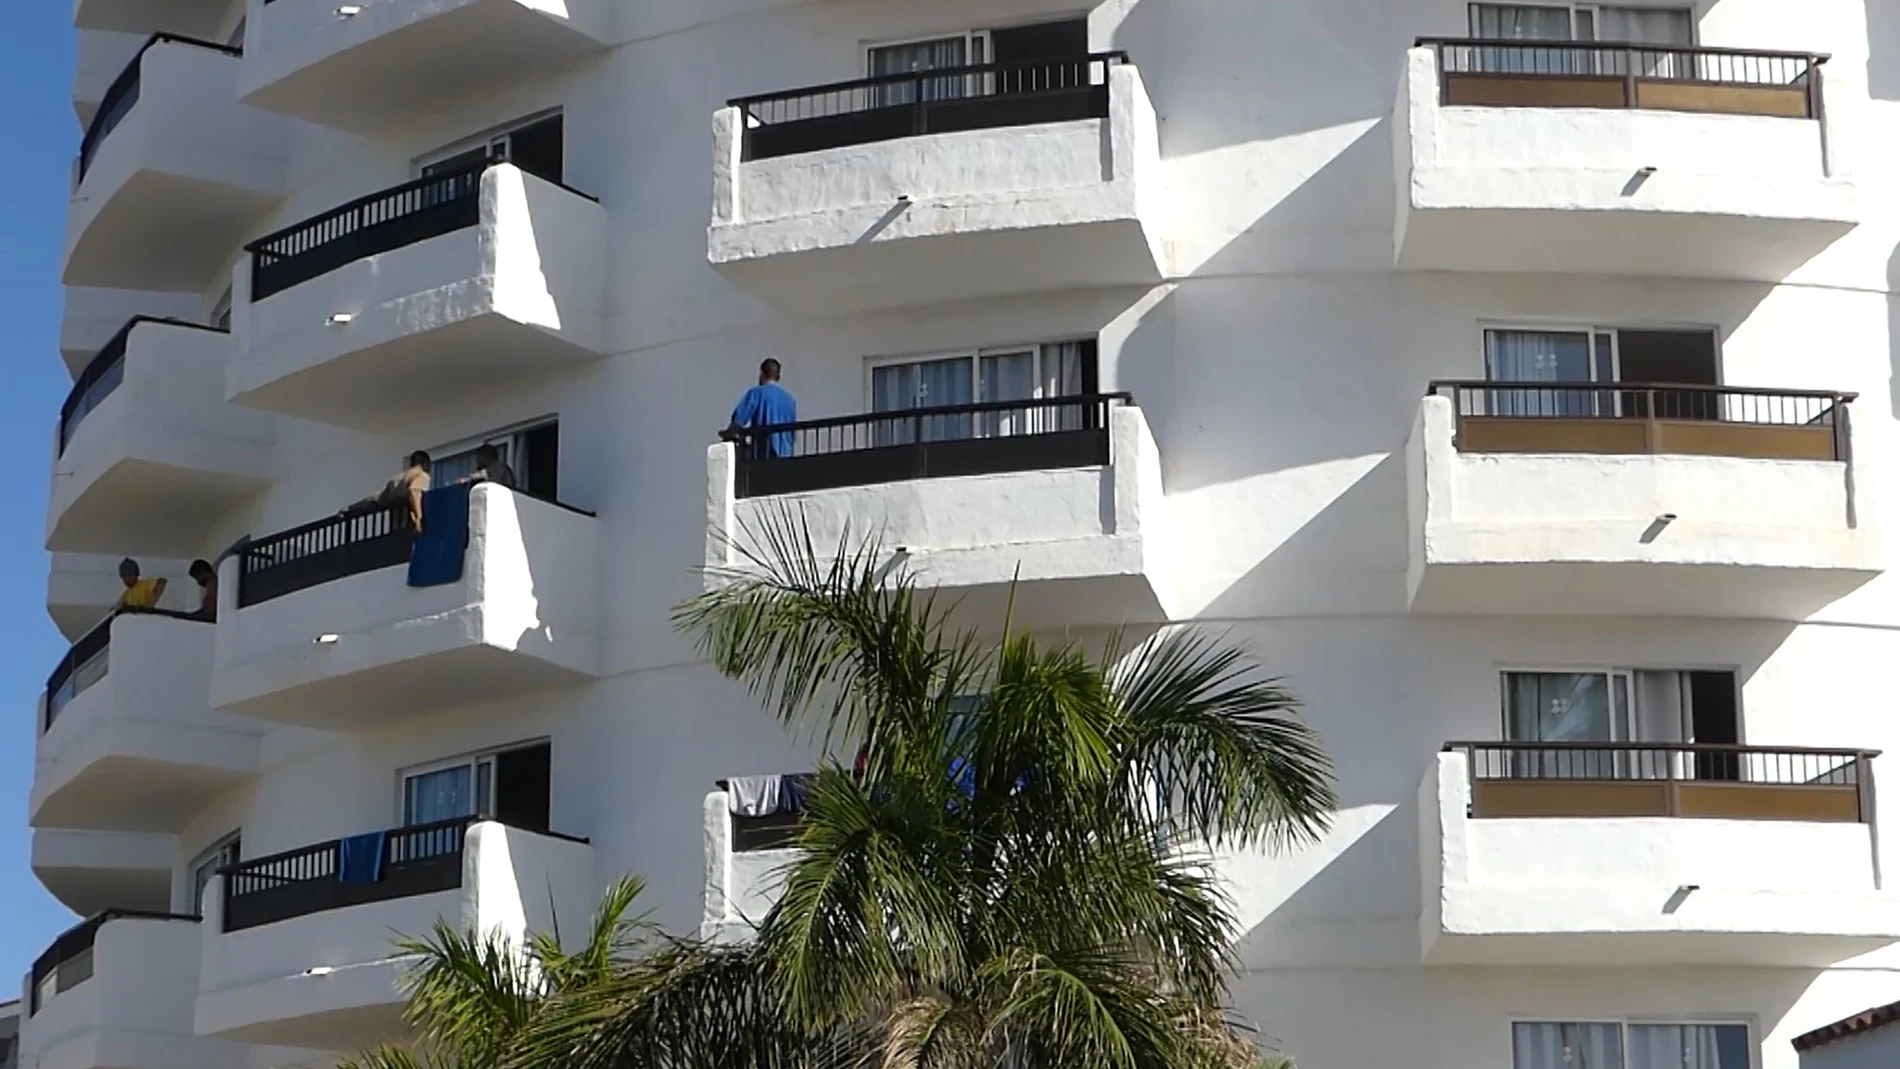 Fachada y balcones del hotel Waikiki donde han acogido a decenas de inmigrantes. zar durante meses. Europa Press